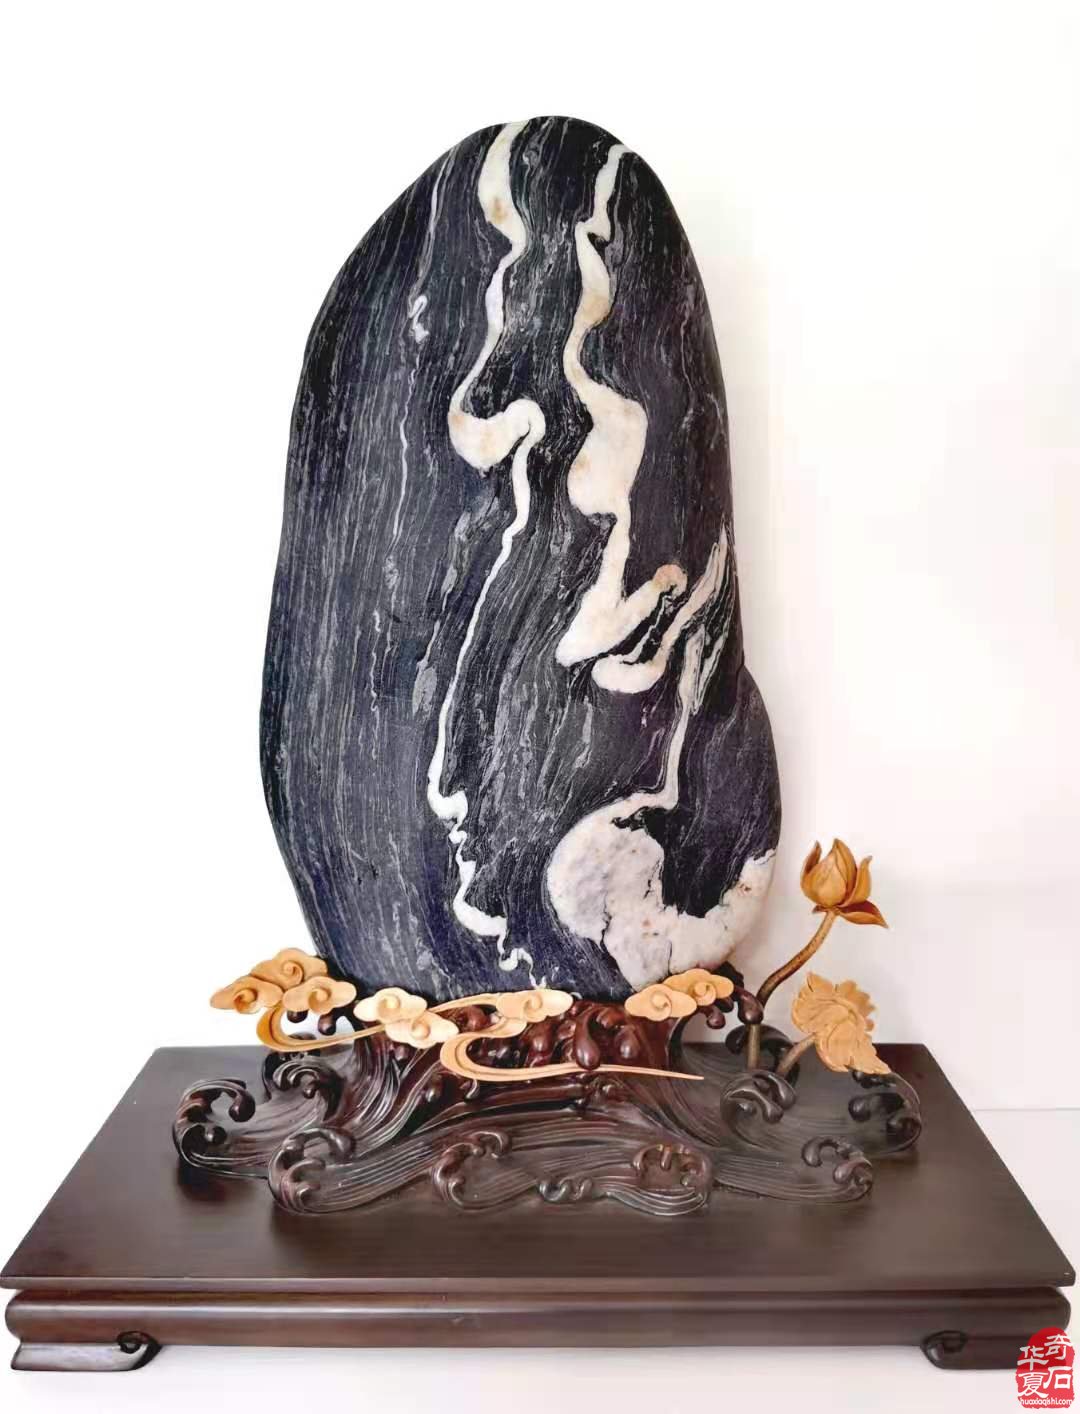 陕西安康：6月12日举办汉水流域 赏石文化节汉江奇石精品展活动